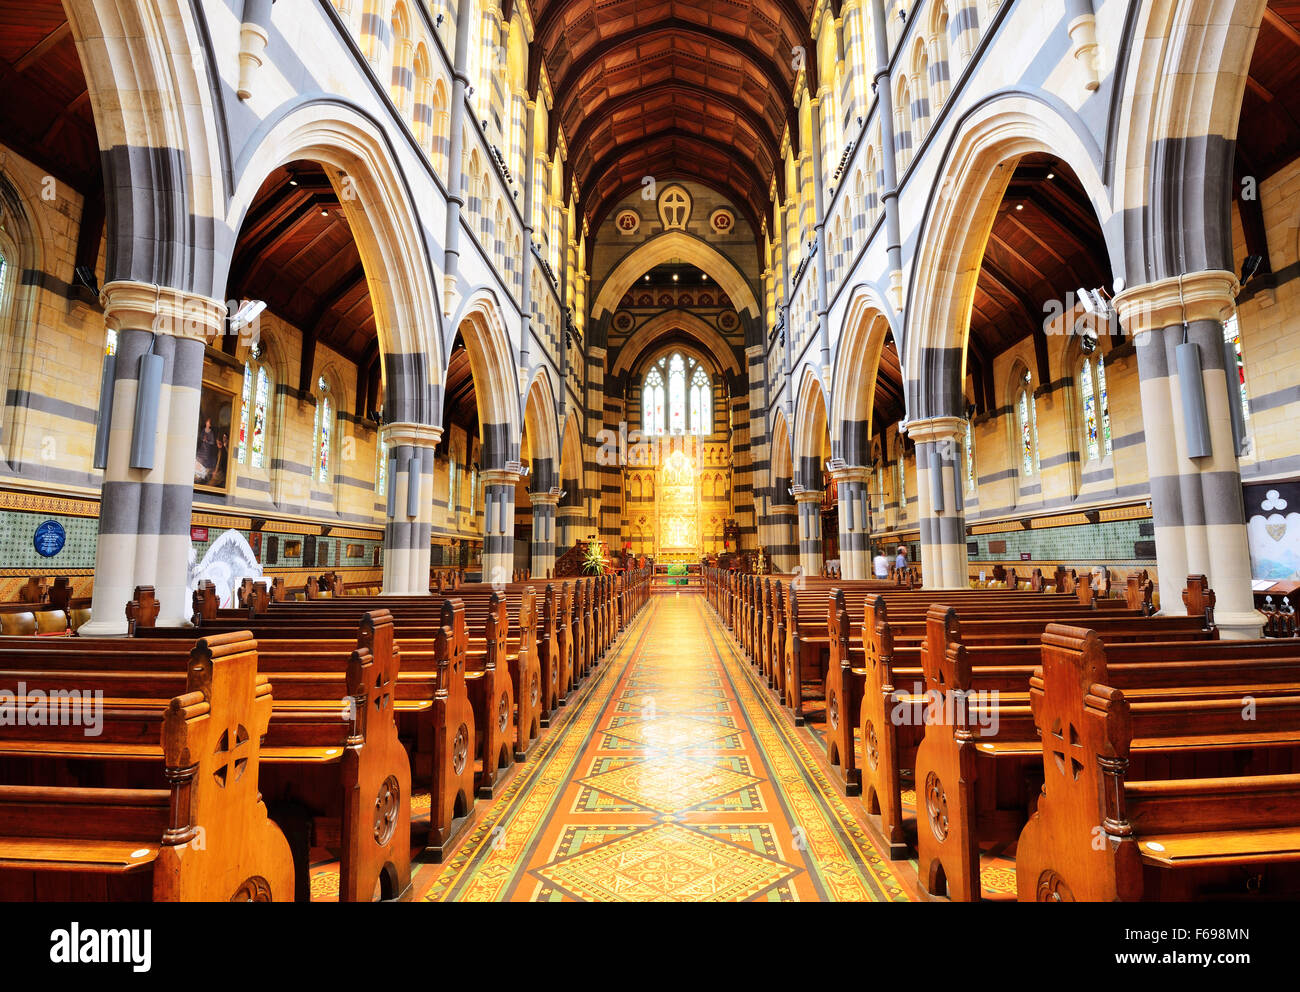 Inneneinrichtung der St. Pauls Cathedral. Die Kathedrale ist ein bedeutendes Wahrzeichen und beeindruckendes Gebäude in Melbourne, Australien. Stockfoto